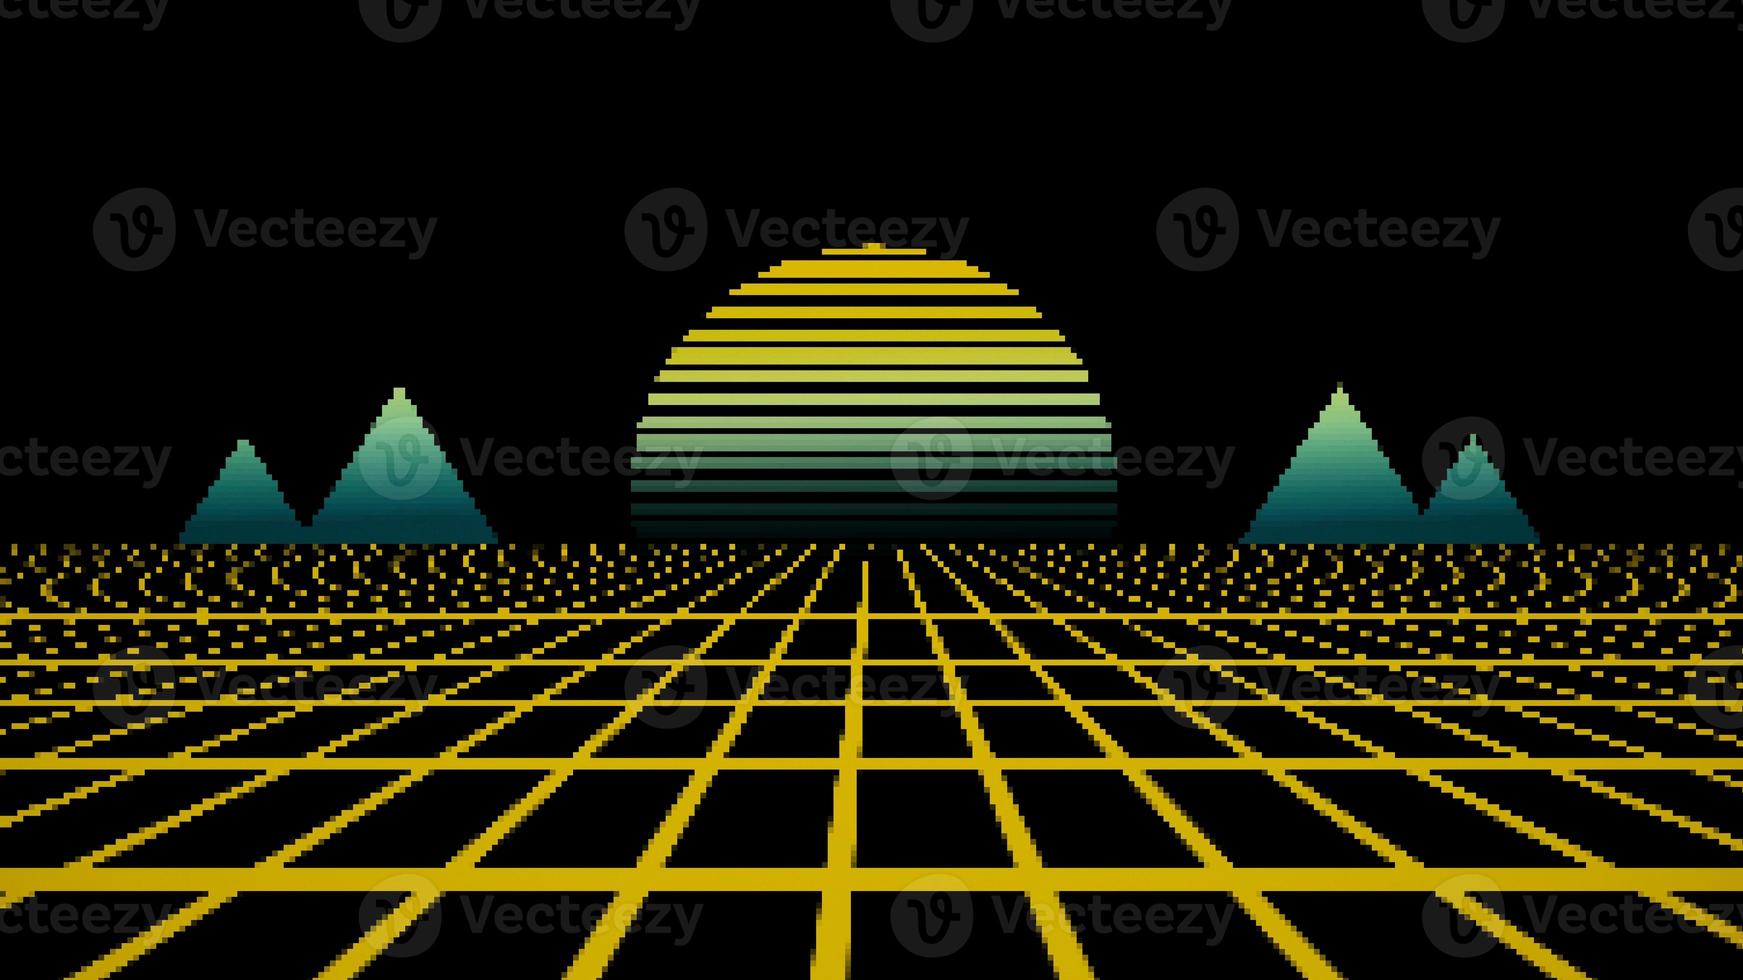 Retro style 80s Sci-Fi Background Futuristic with laser grid landscape. photo